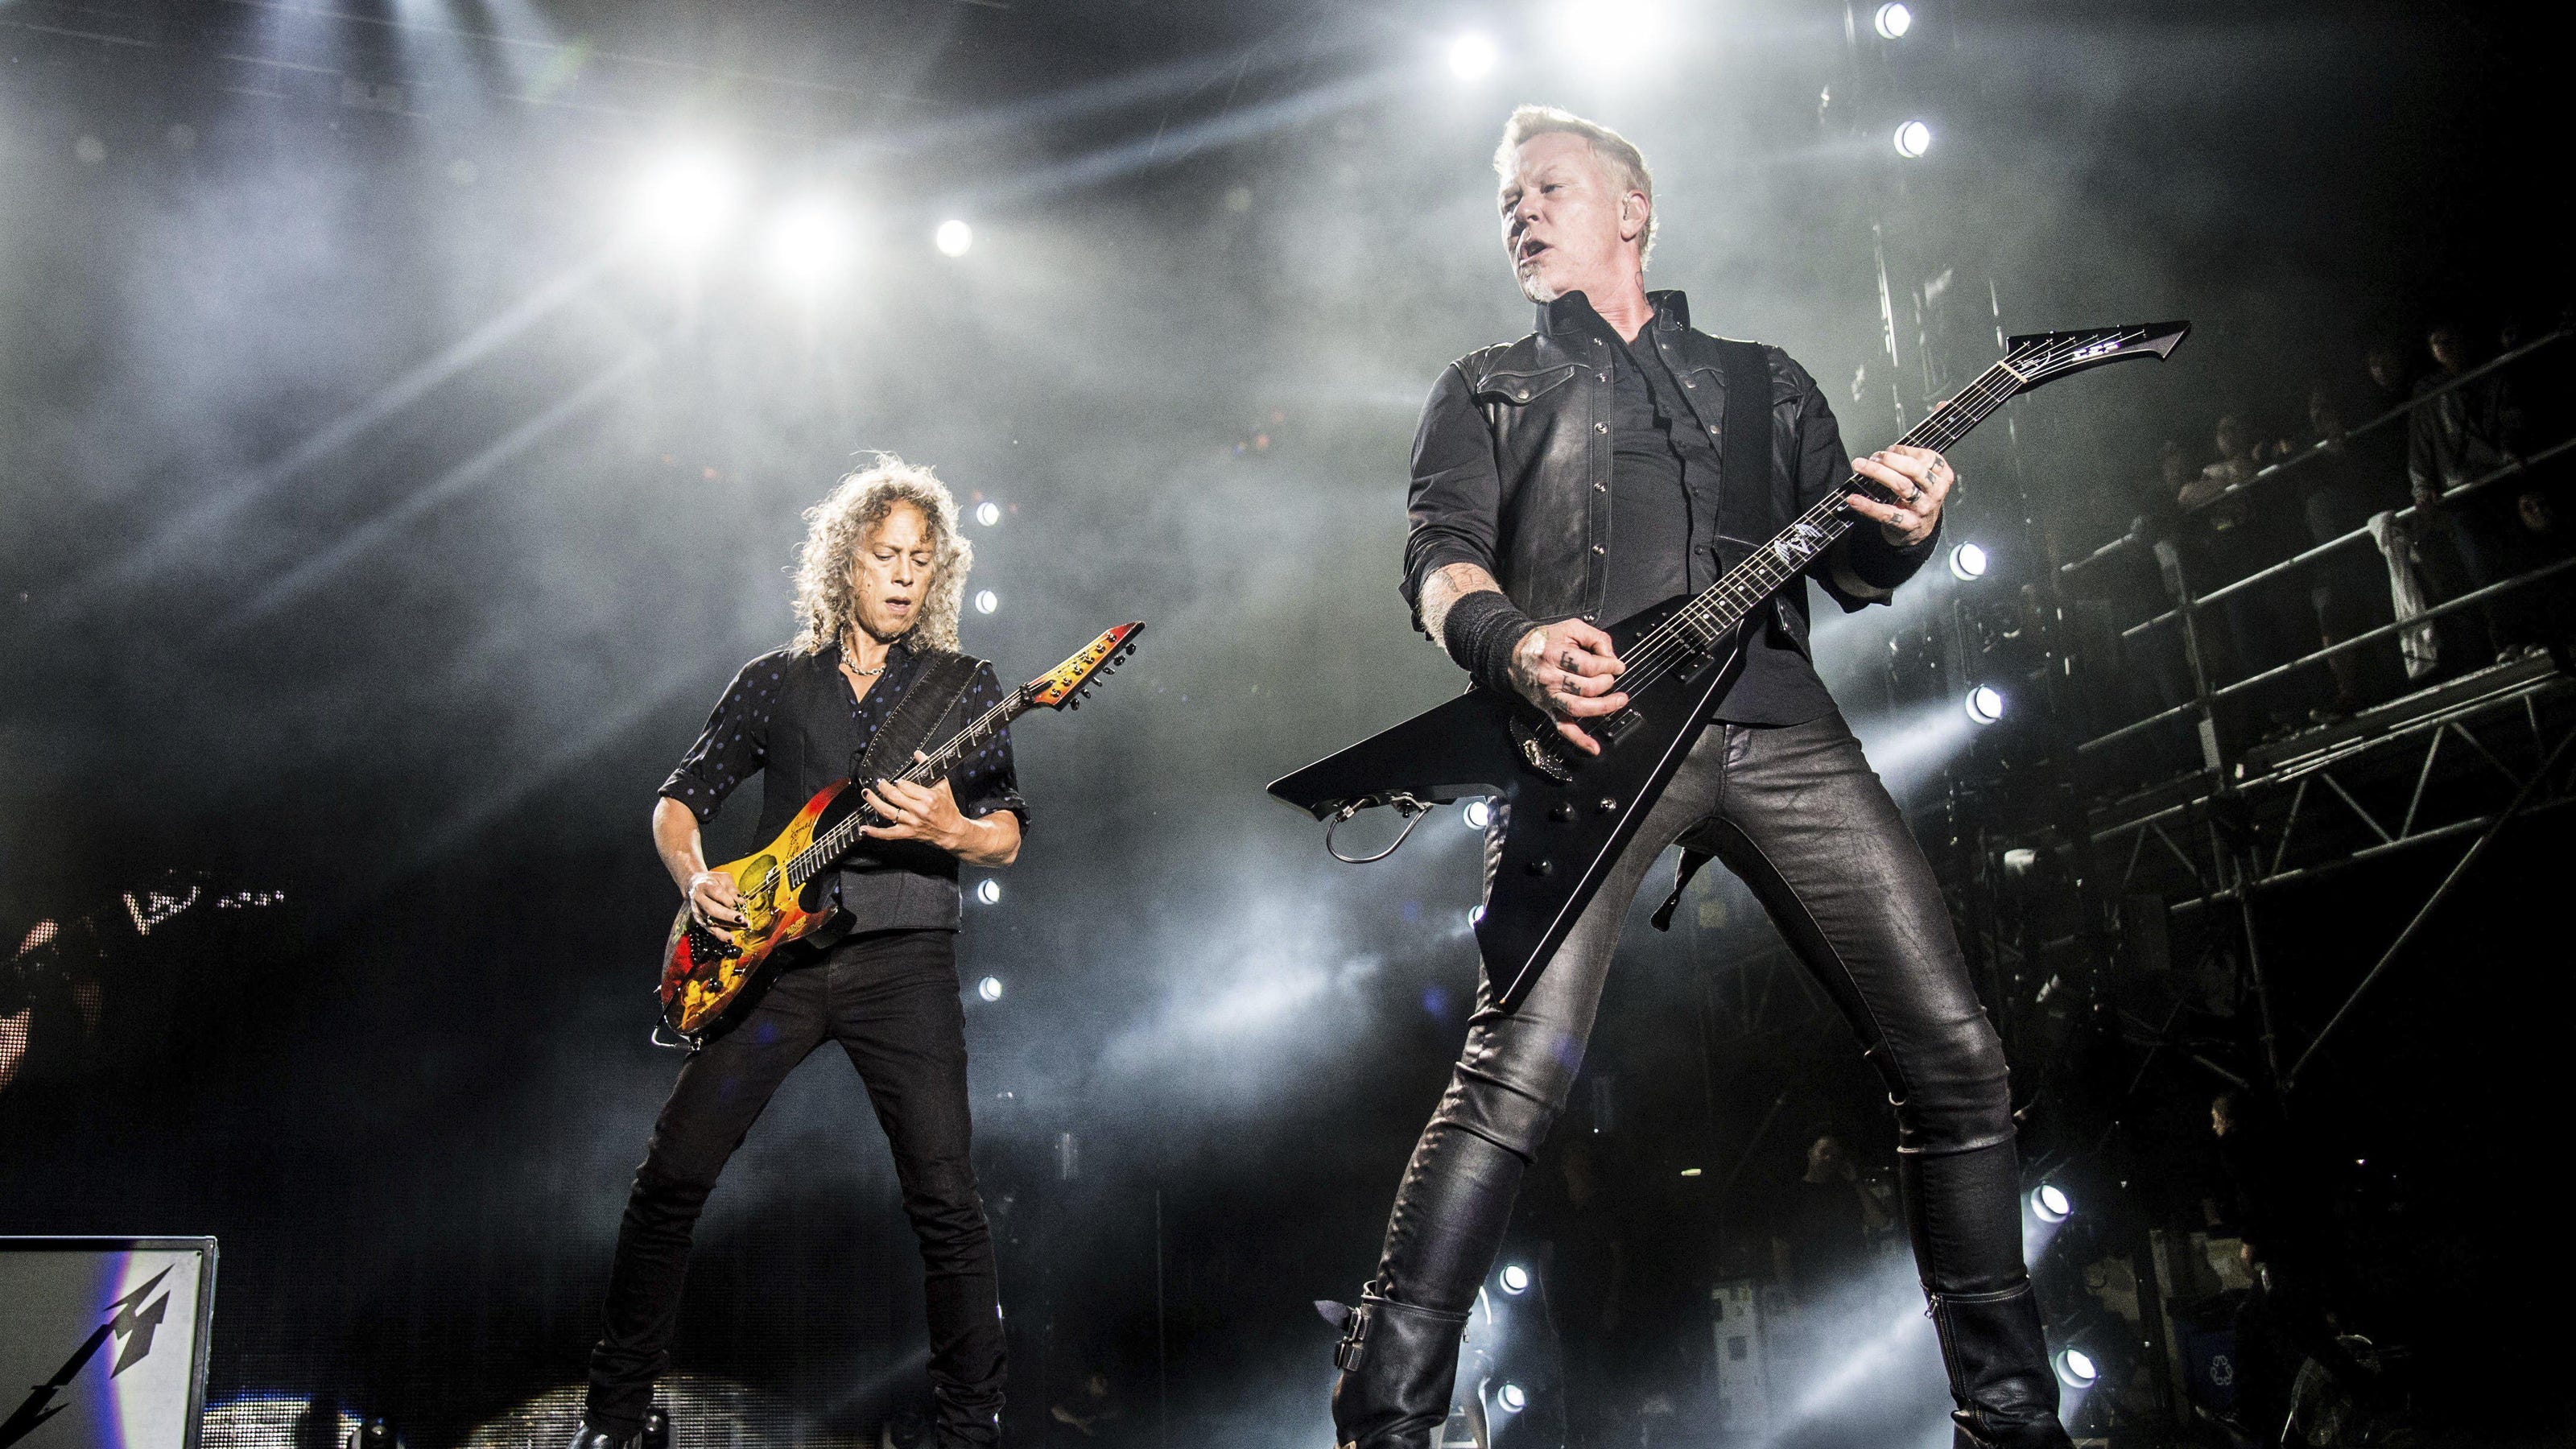 Офицеры в исполнении группы металлика. Группа Metallica. 72 Сеасон металлика. Metallica 72 Seasons концерт.